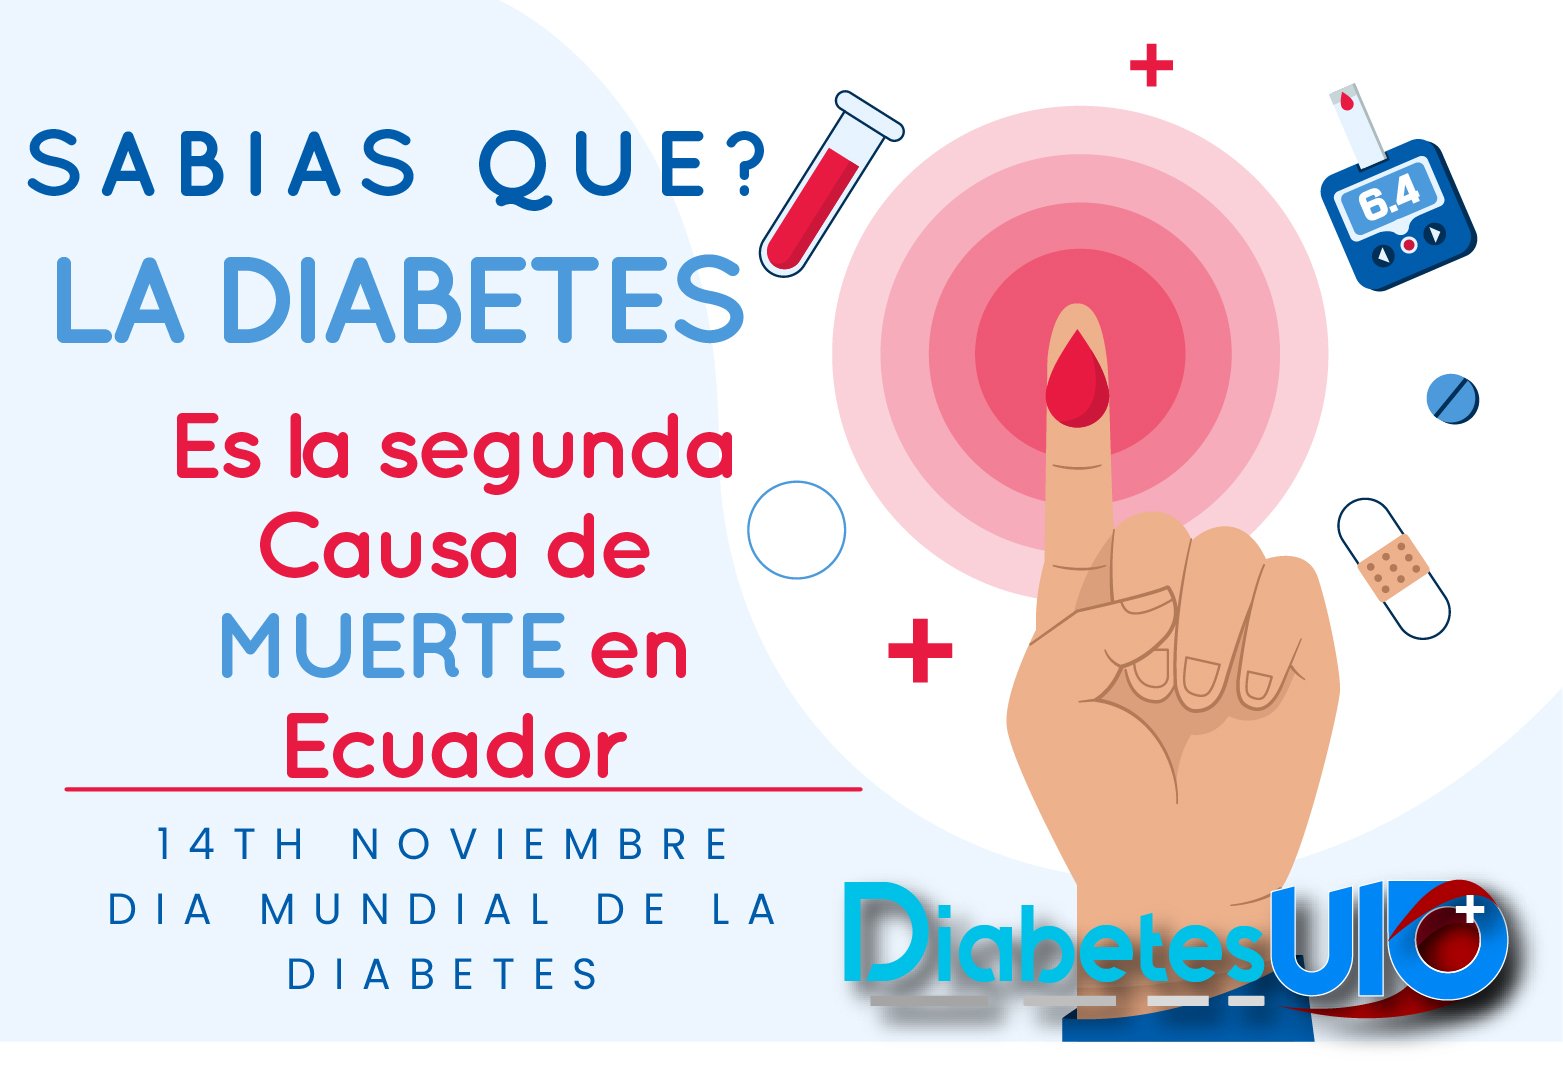 La diabetes en Ecuador.